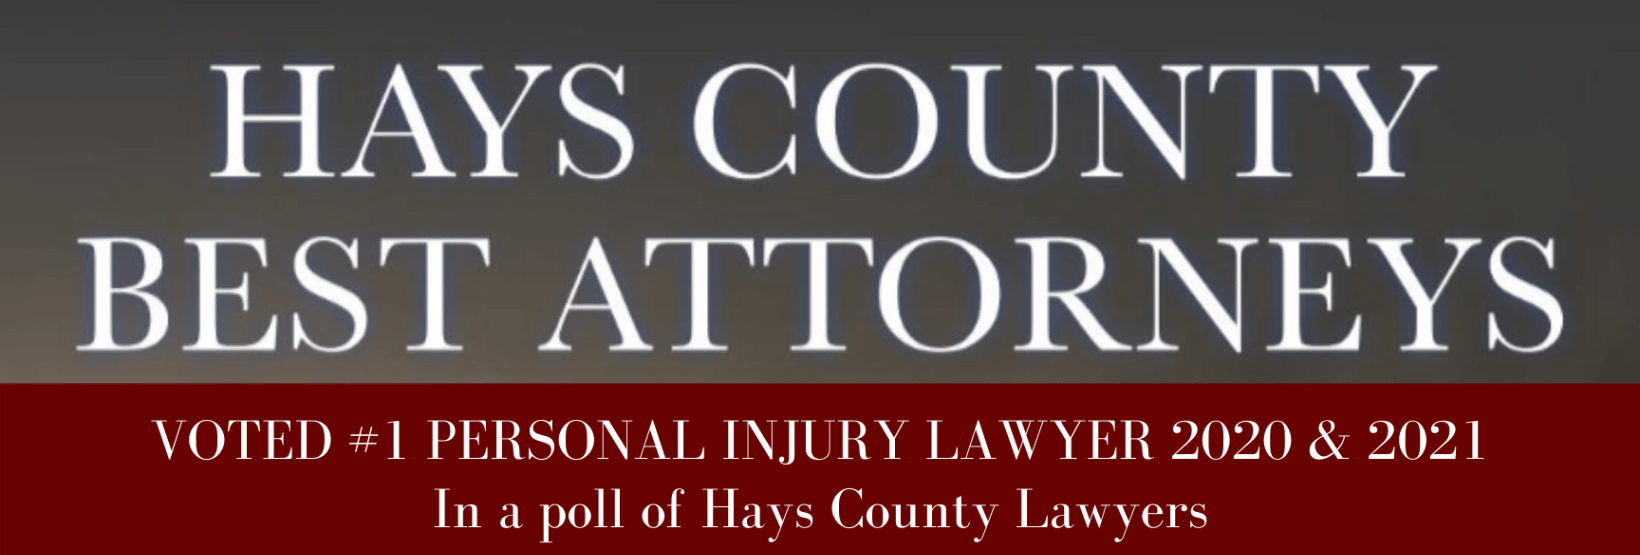 Roland hays county best attorneys